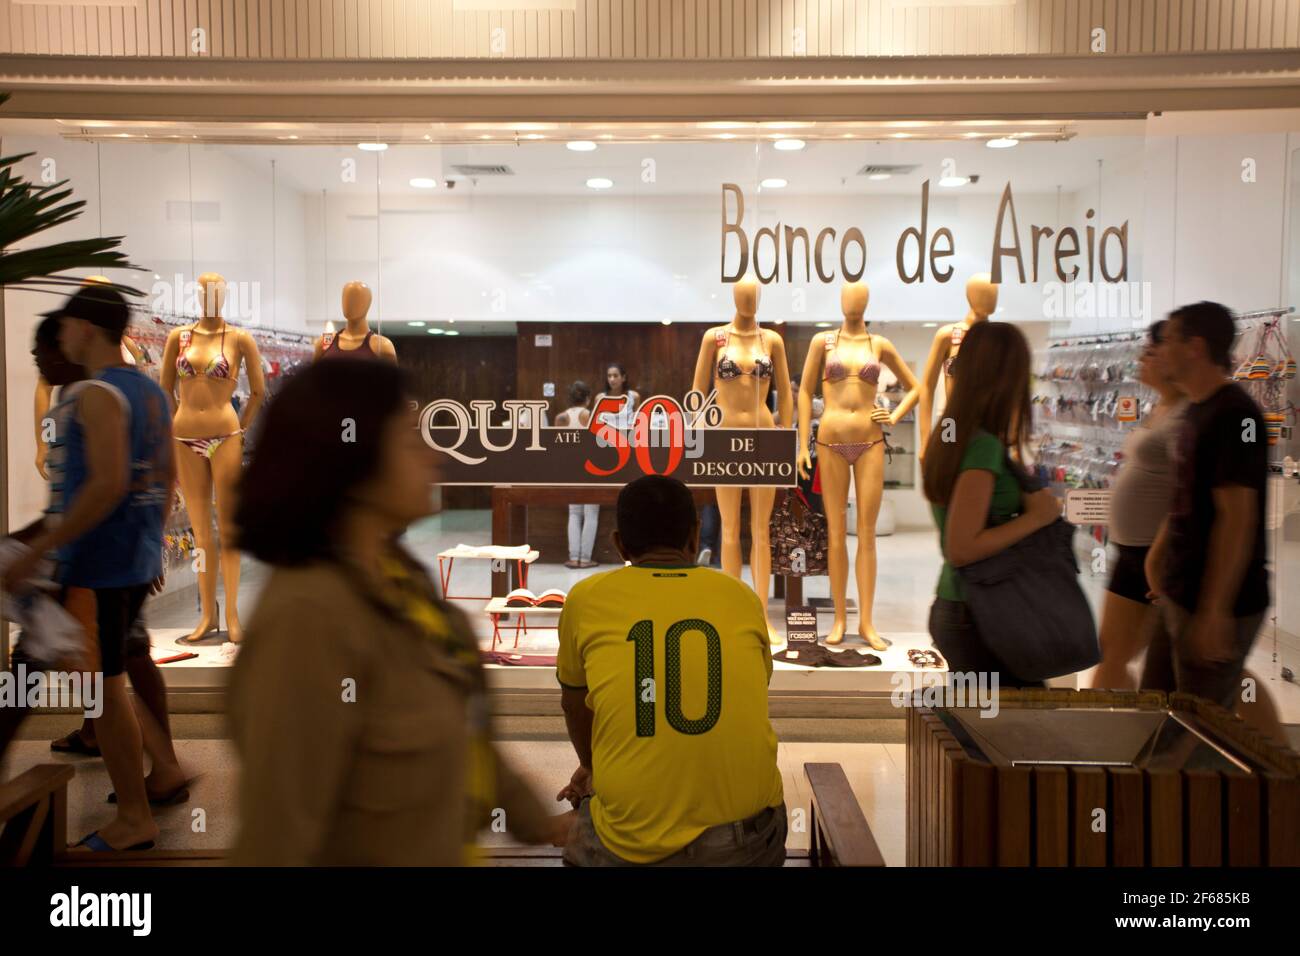 Nuova classe media brasiliana al Nova America Shopping Centre, situato in un ex quartiere desertuto di Rio de Janeiro. Durante il governo del presidente Lula ( 2003 - 2010 ) è stata creata una nuova classe di consumatori in Brasile. Foto Stock